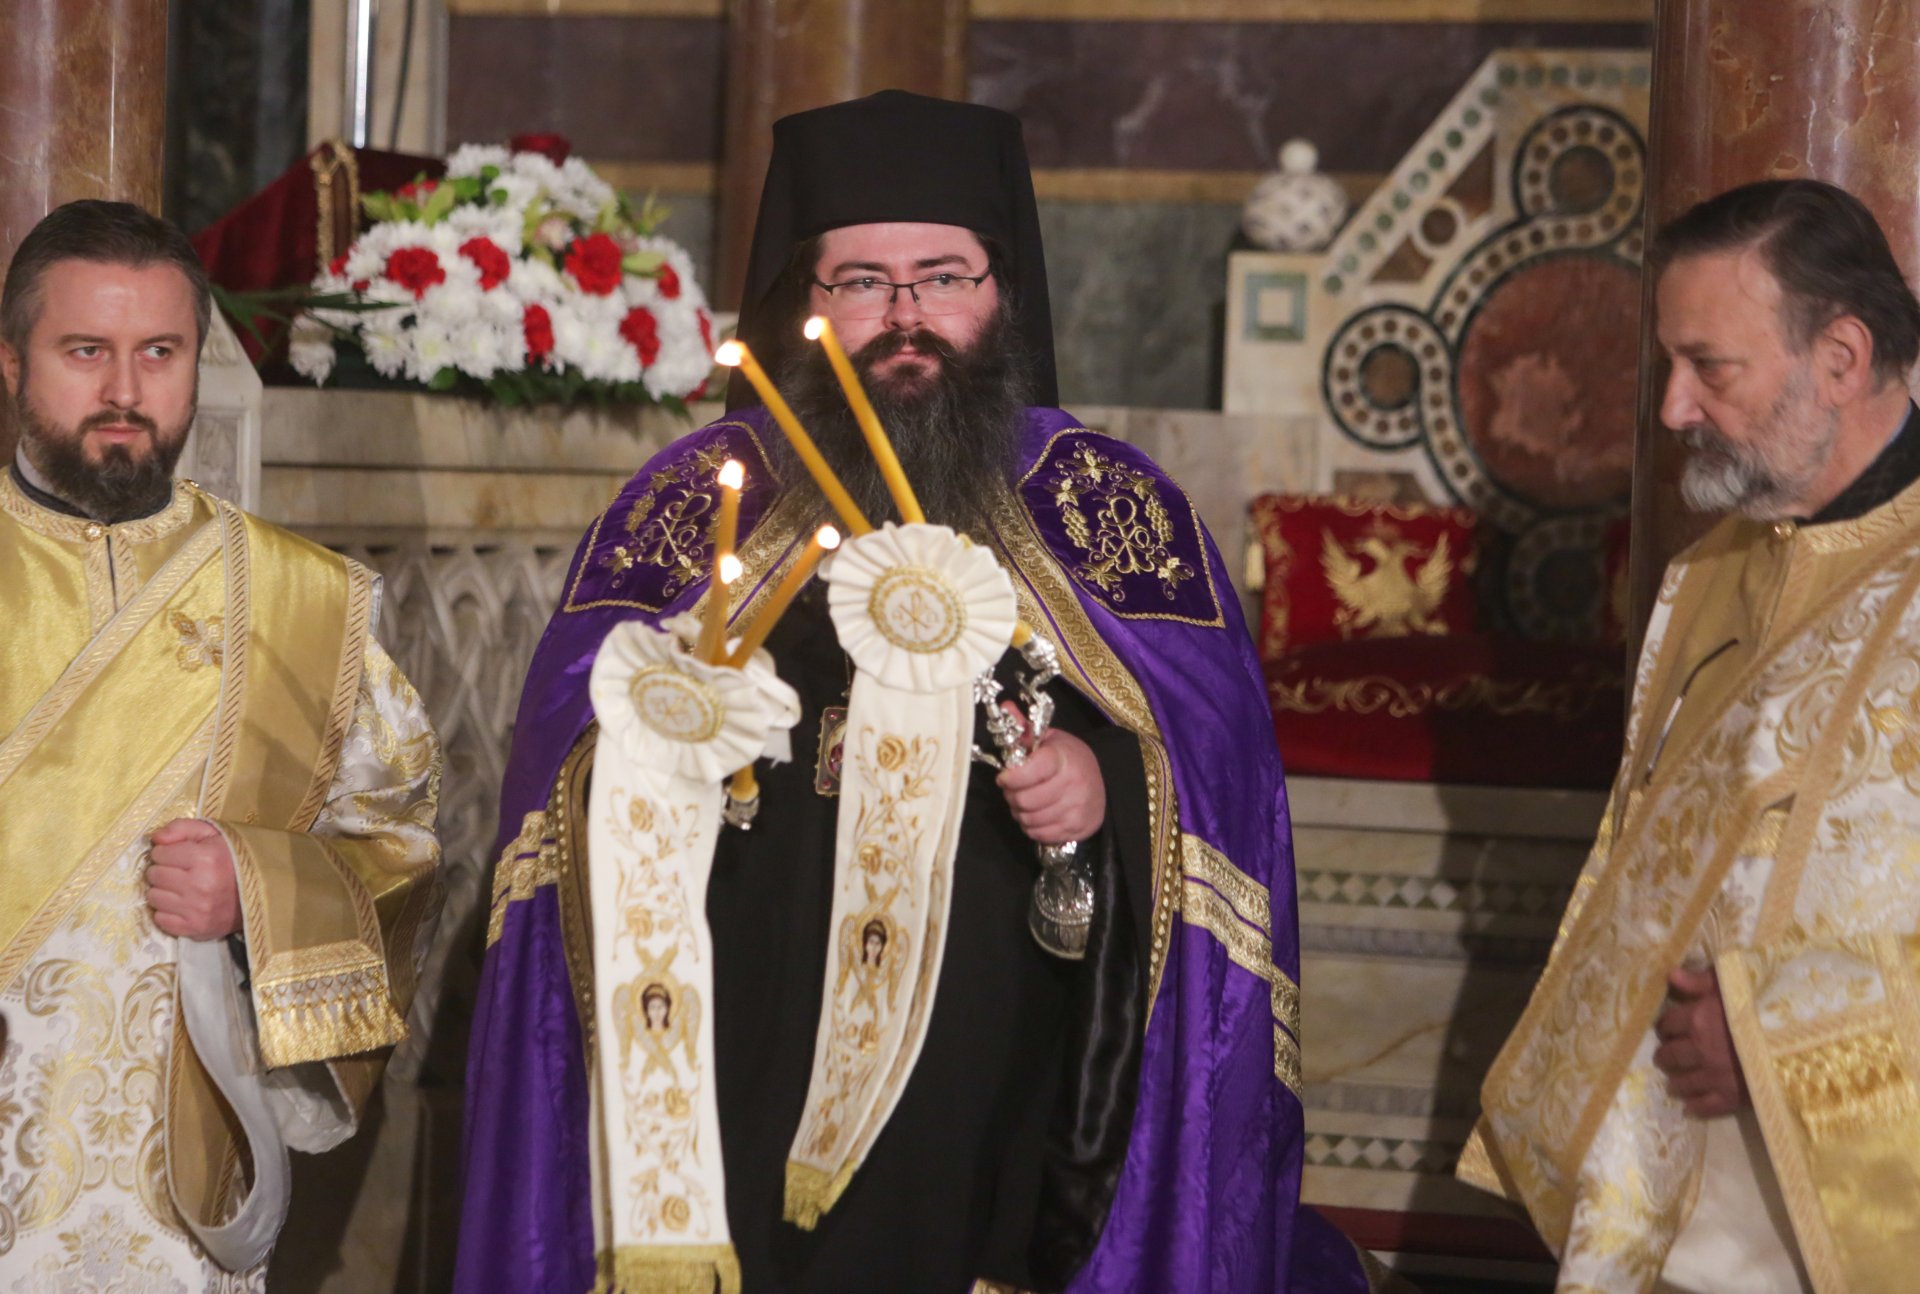 Празничното богослужение за Бъдни вечер се проведе в патриаршеската катедрала "Св. Александър Невски" и беше водено от Мелнишки епископ Герасим